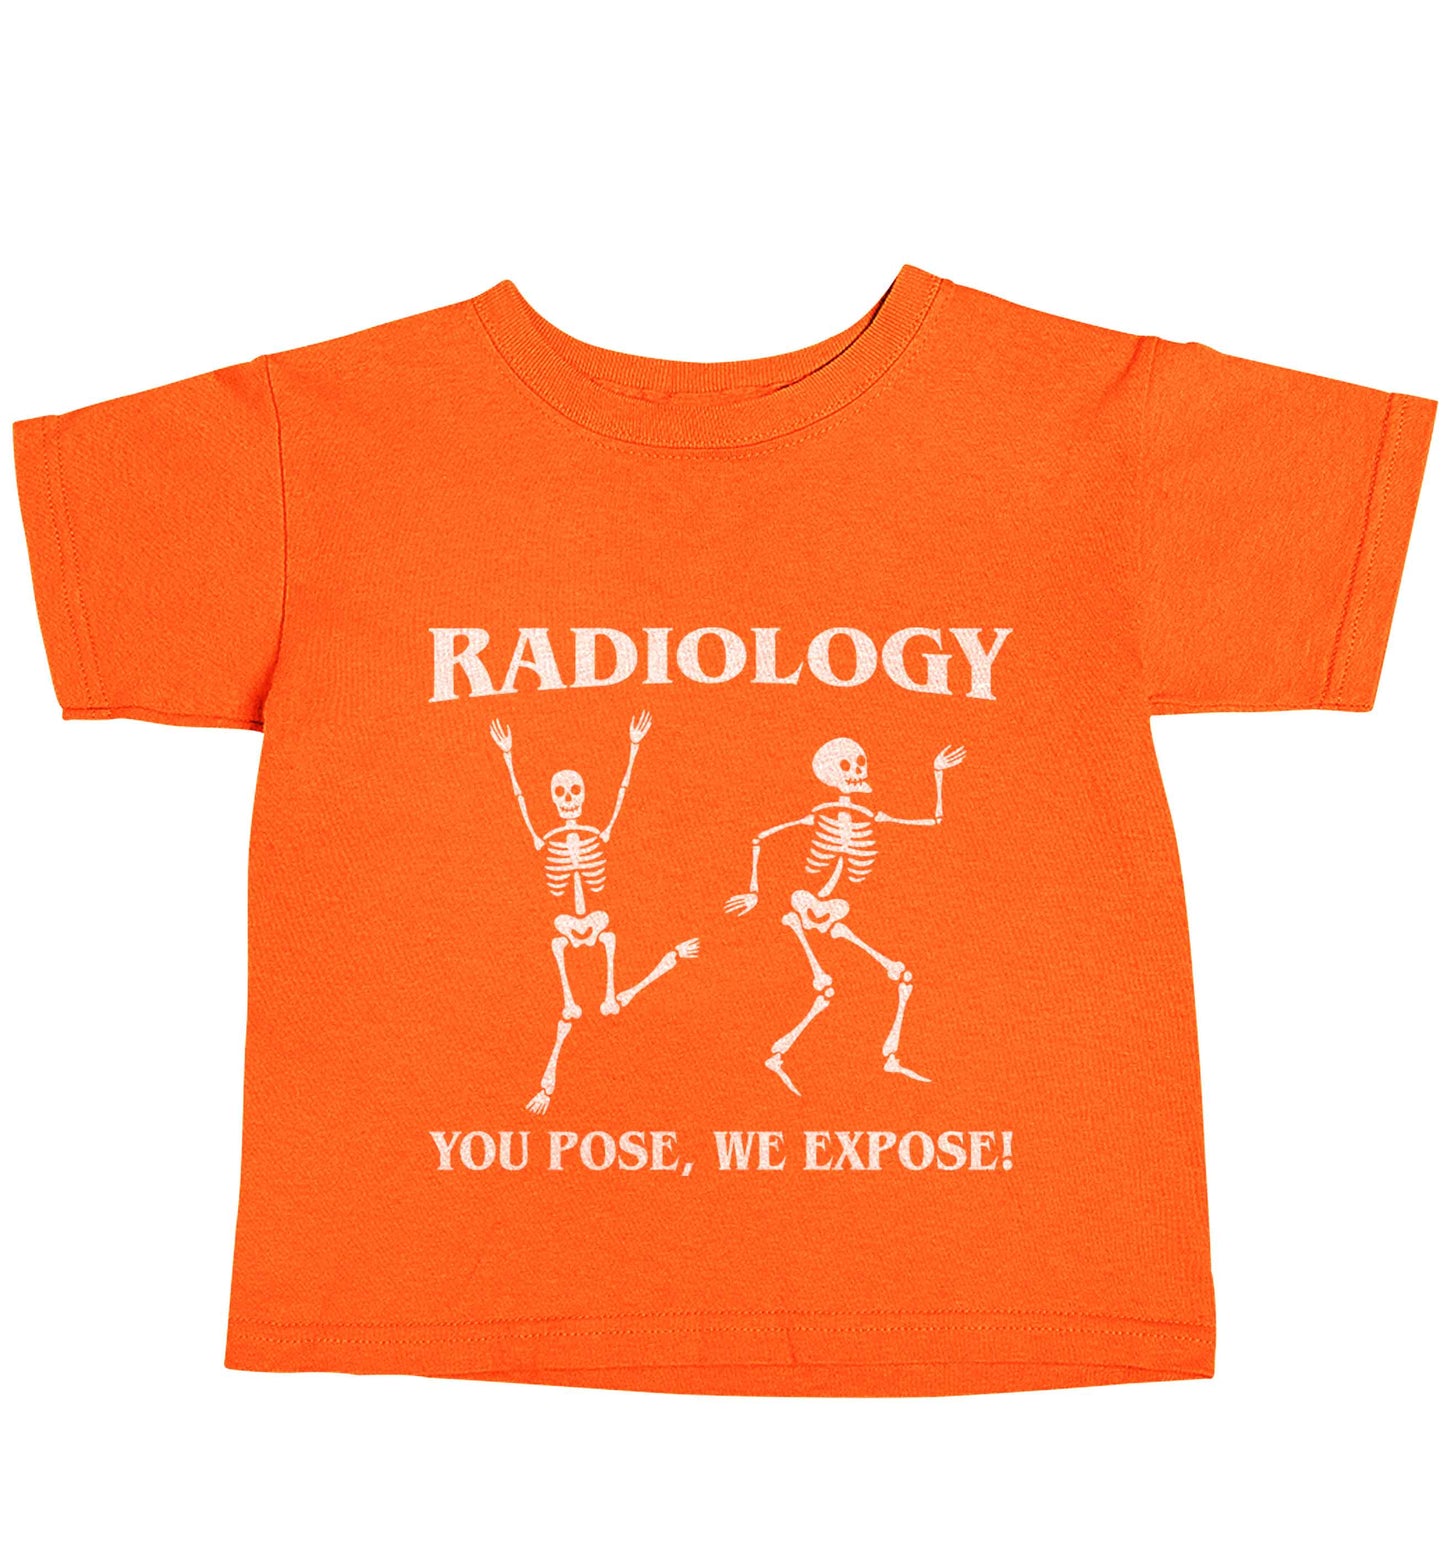 Radiology you pose we expose orange baby toddler Tshirt 2 Years